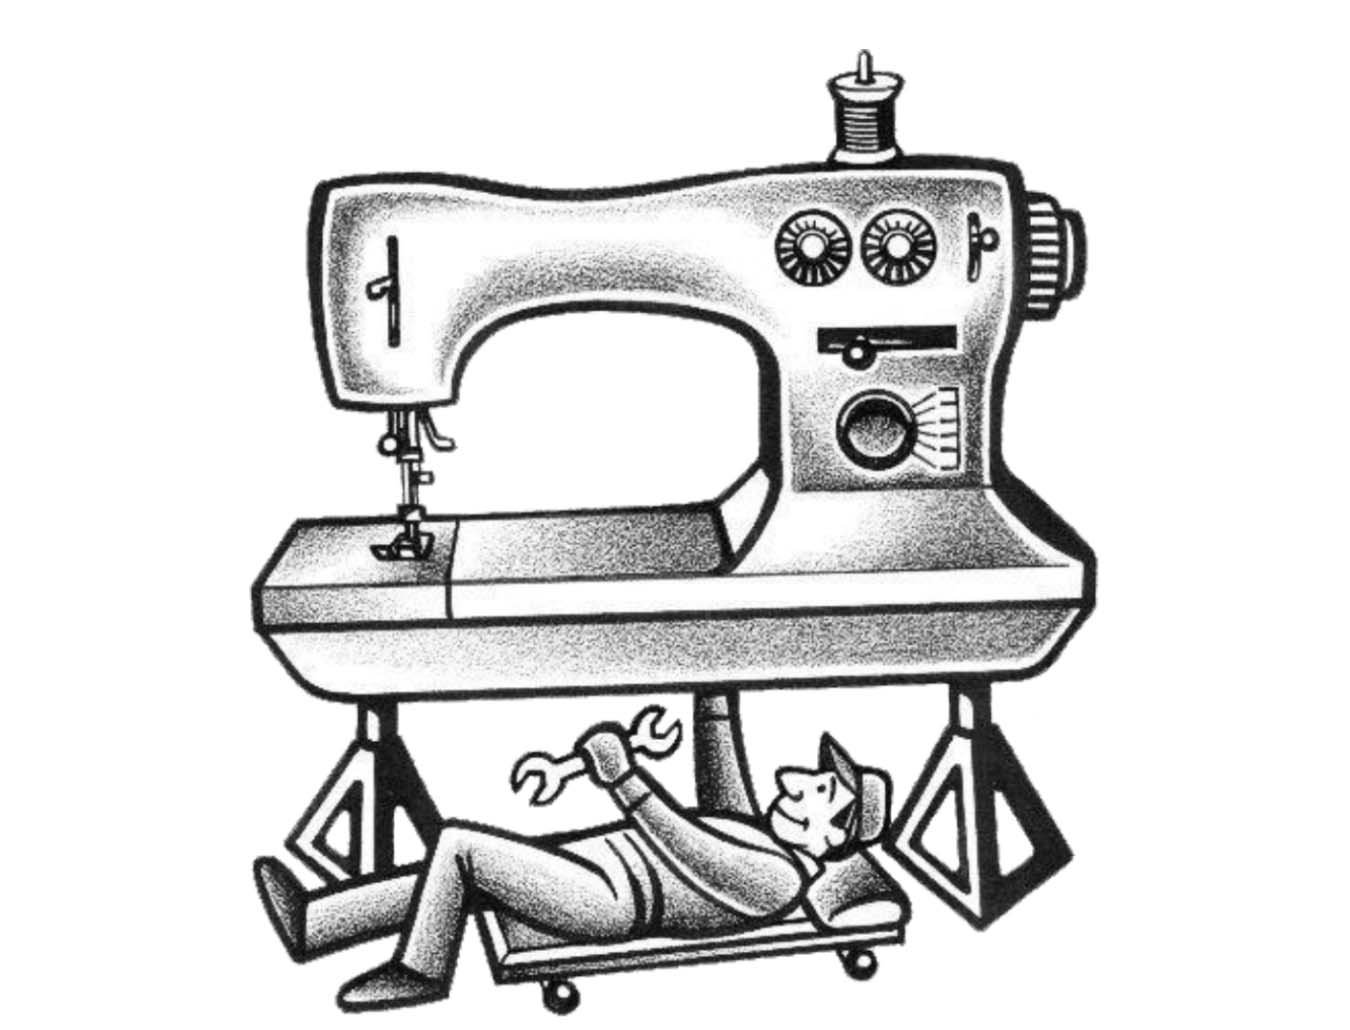 Машинка шьет назад. Швейная машинка. Починка швейной машинки. Швейная машинка сломалась. Механик швейных машин.